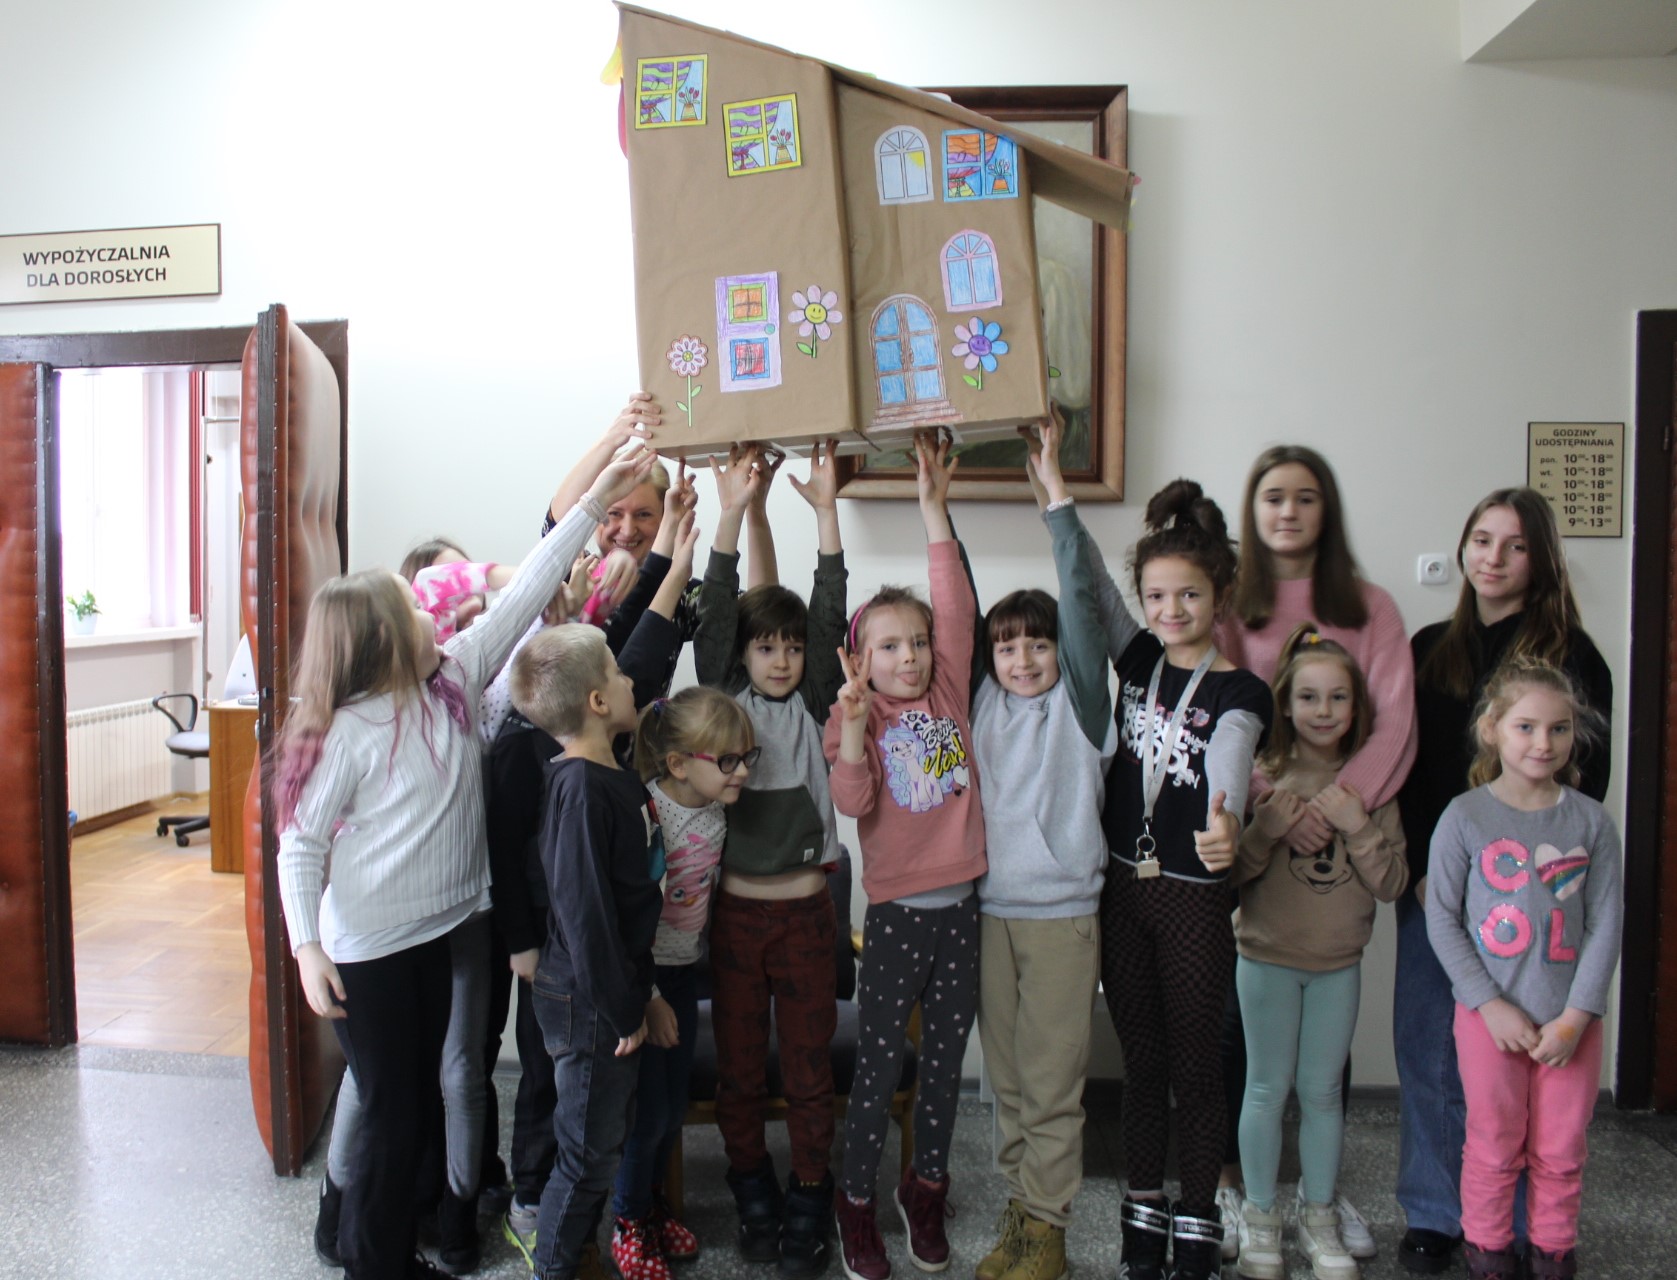 Grupa dzieci w holu bibliotecznym na wysoko uniesionych rękach trzyma domek zrobiony z kartonów.